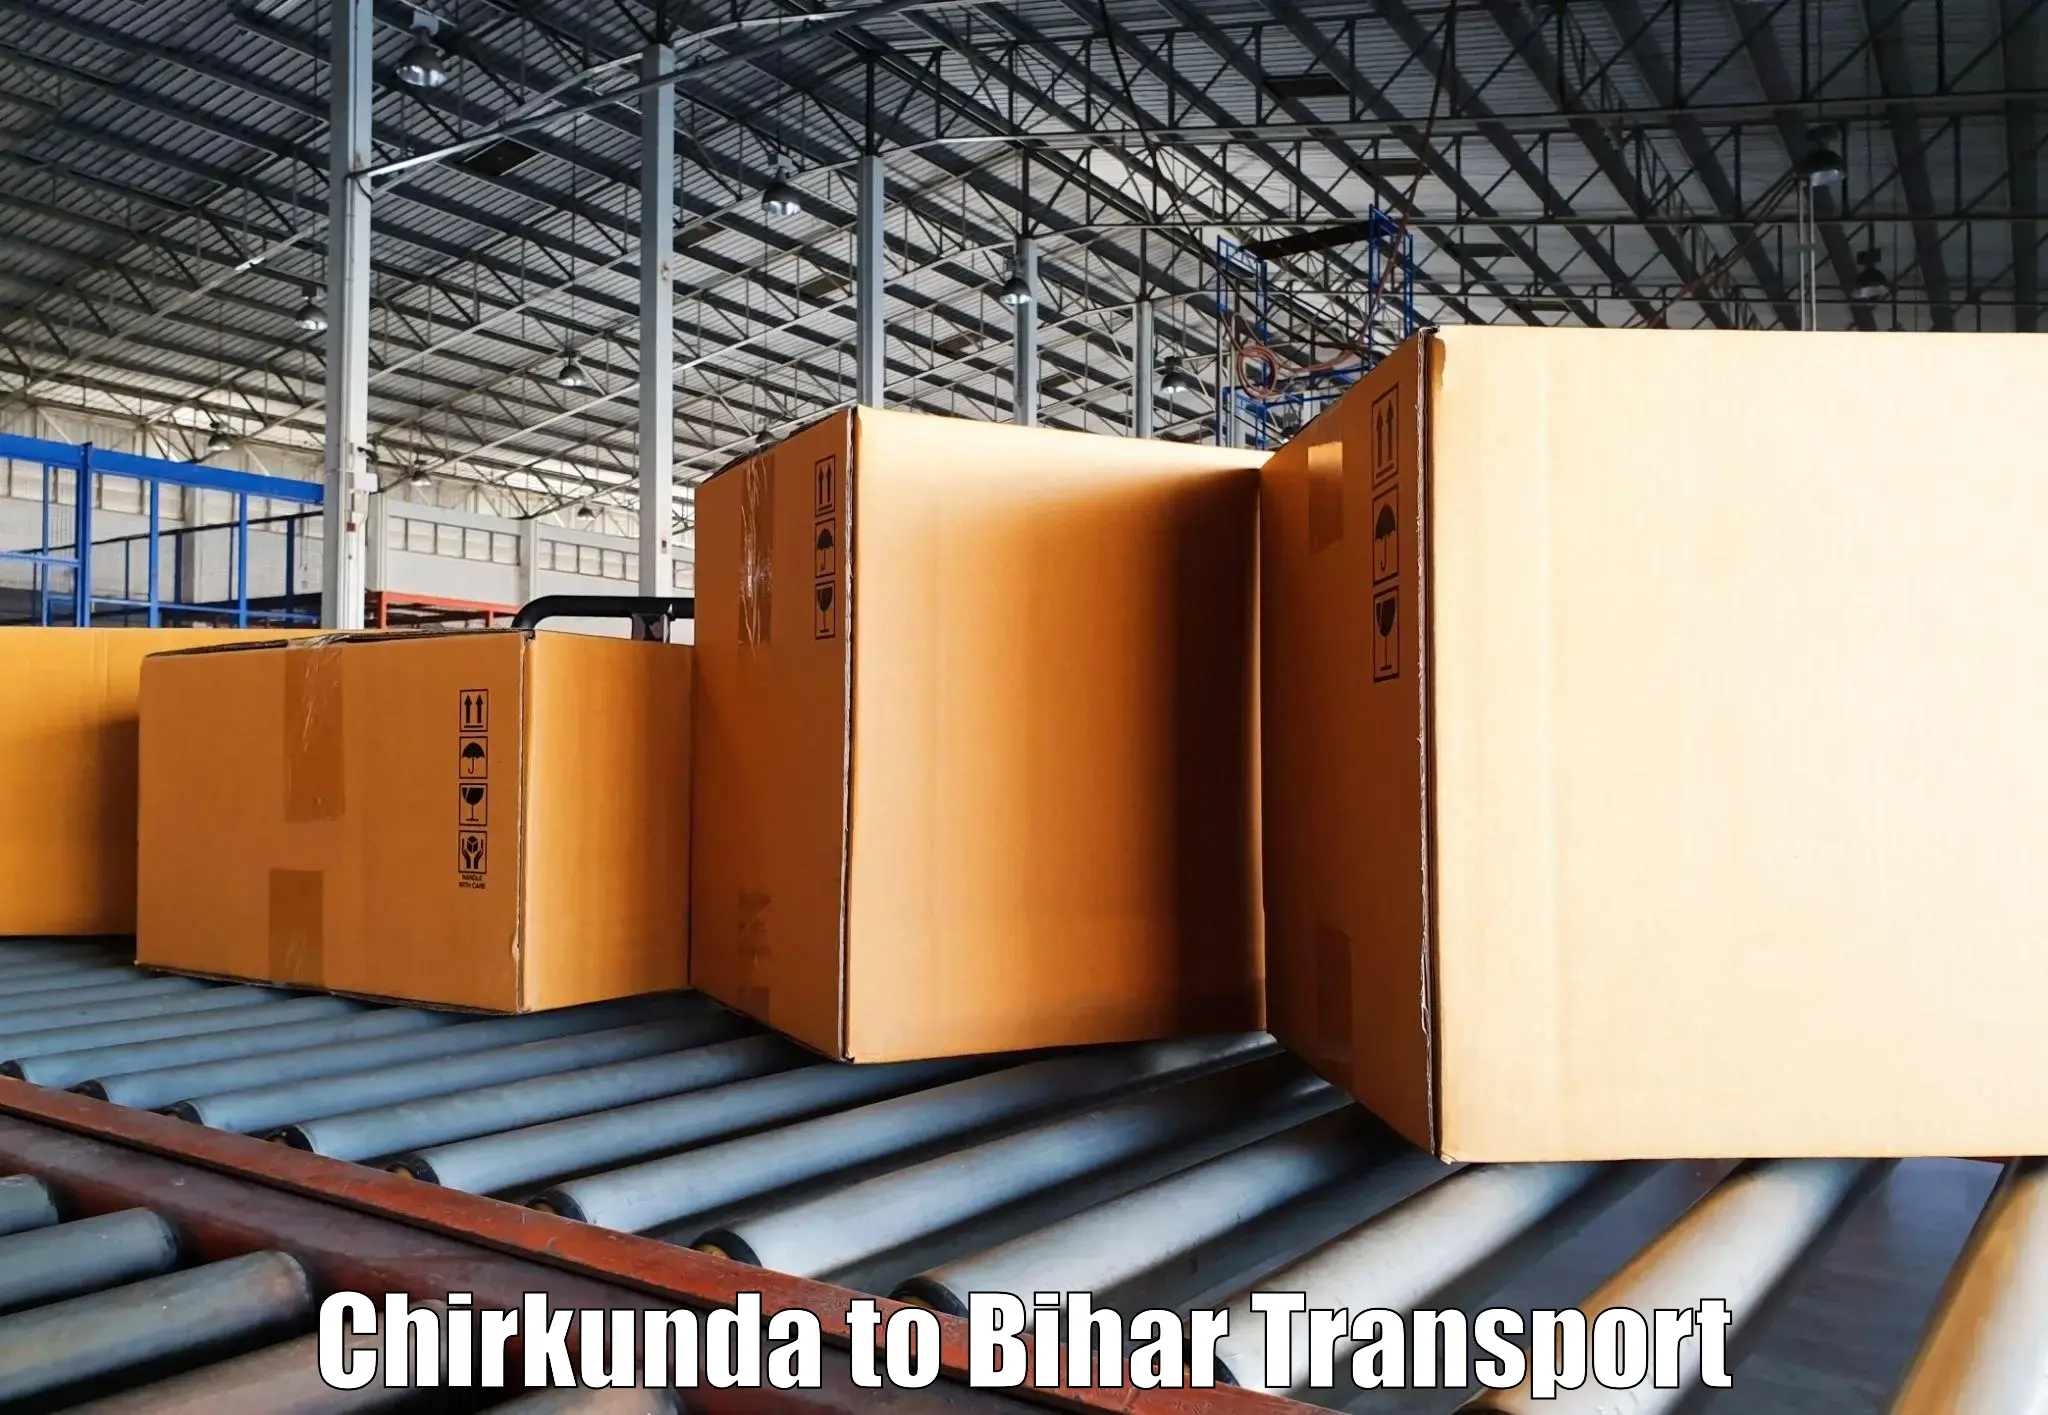 Pick up transport service Chirkunda to Chakai